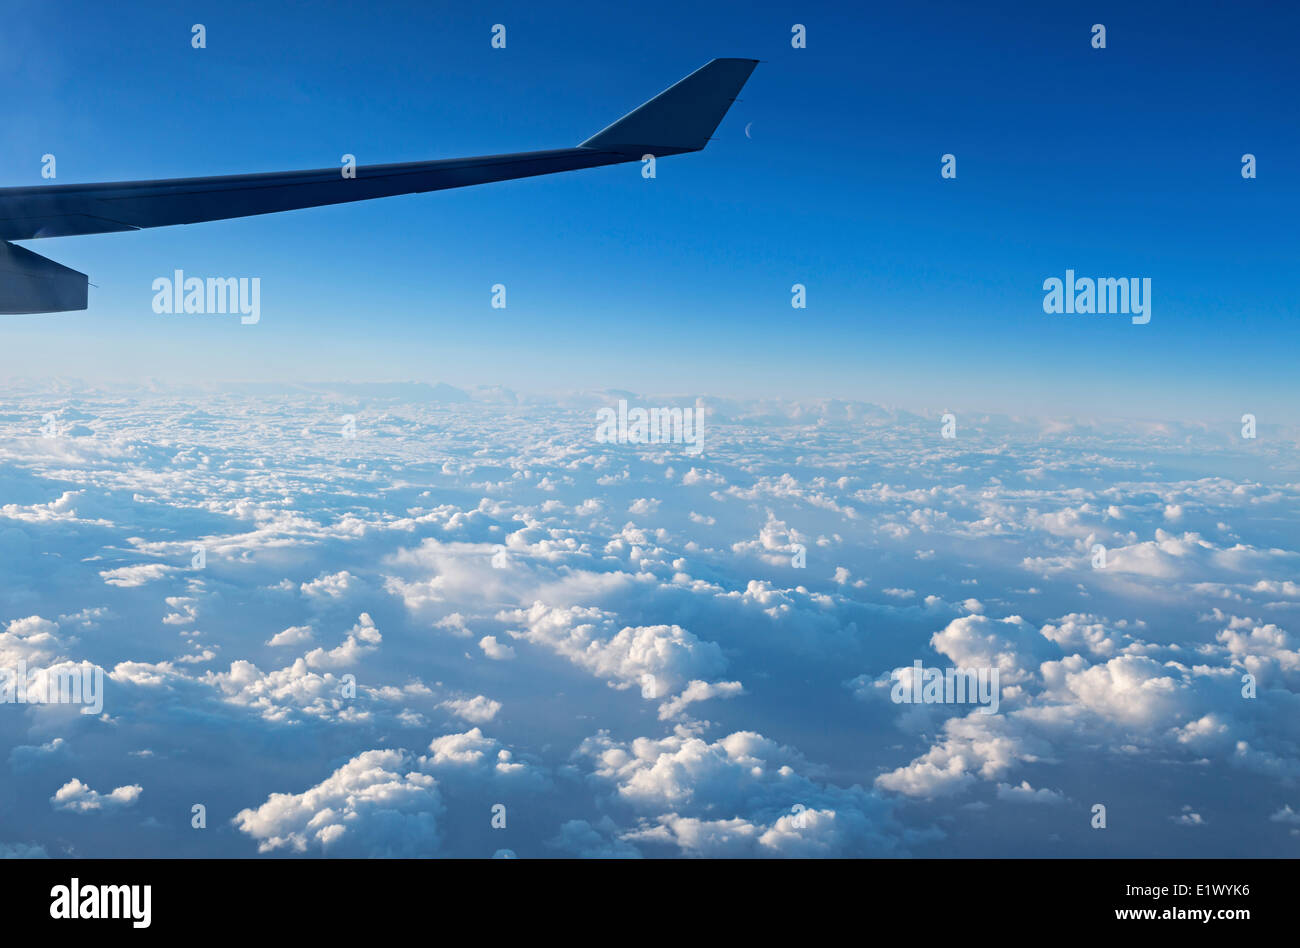 Antenne, Wolken, fliegen, Neumond, Flugzeugflügel während des Fluges, Stockfoto